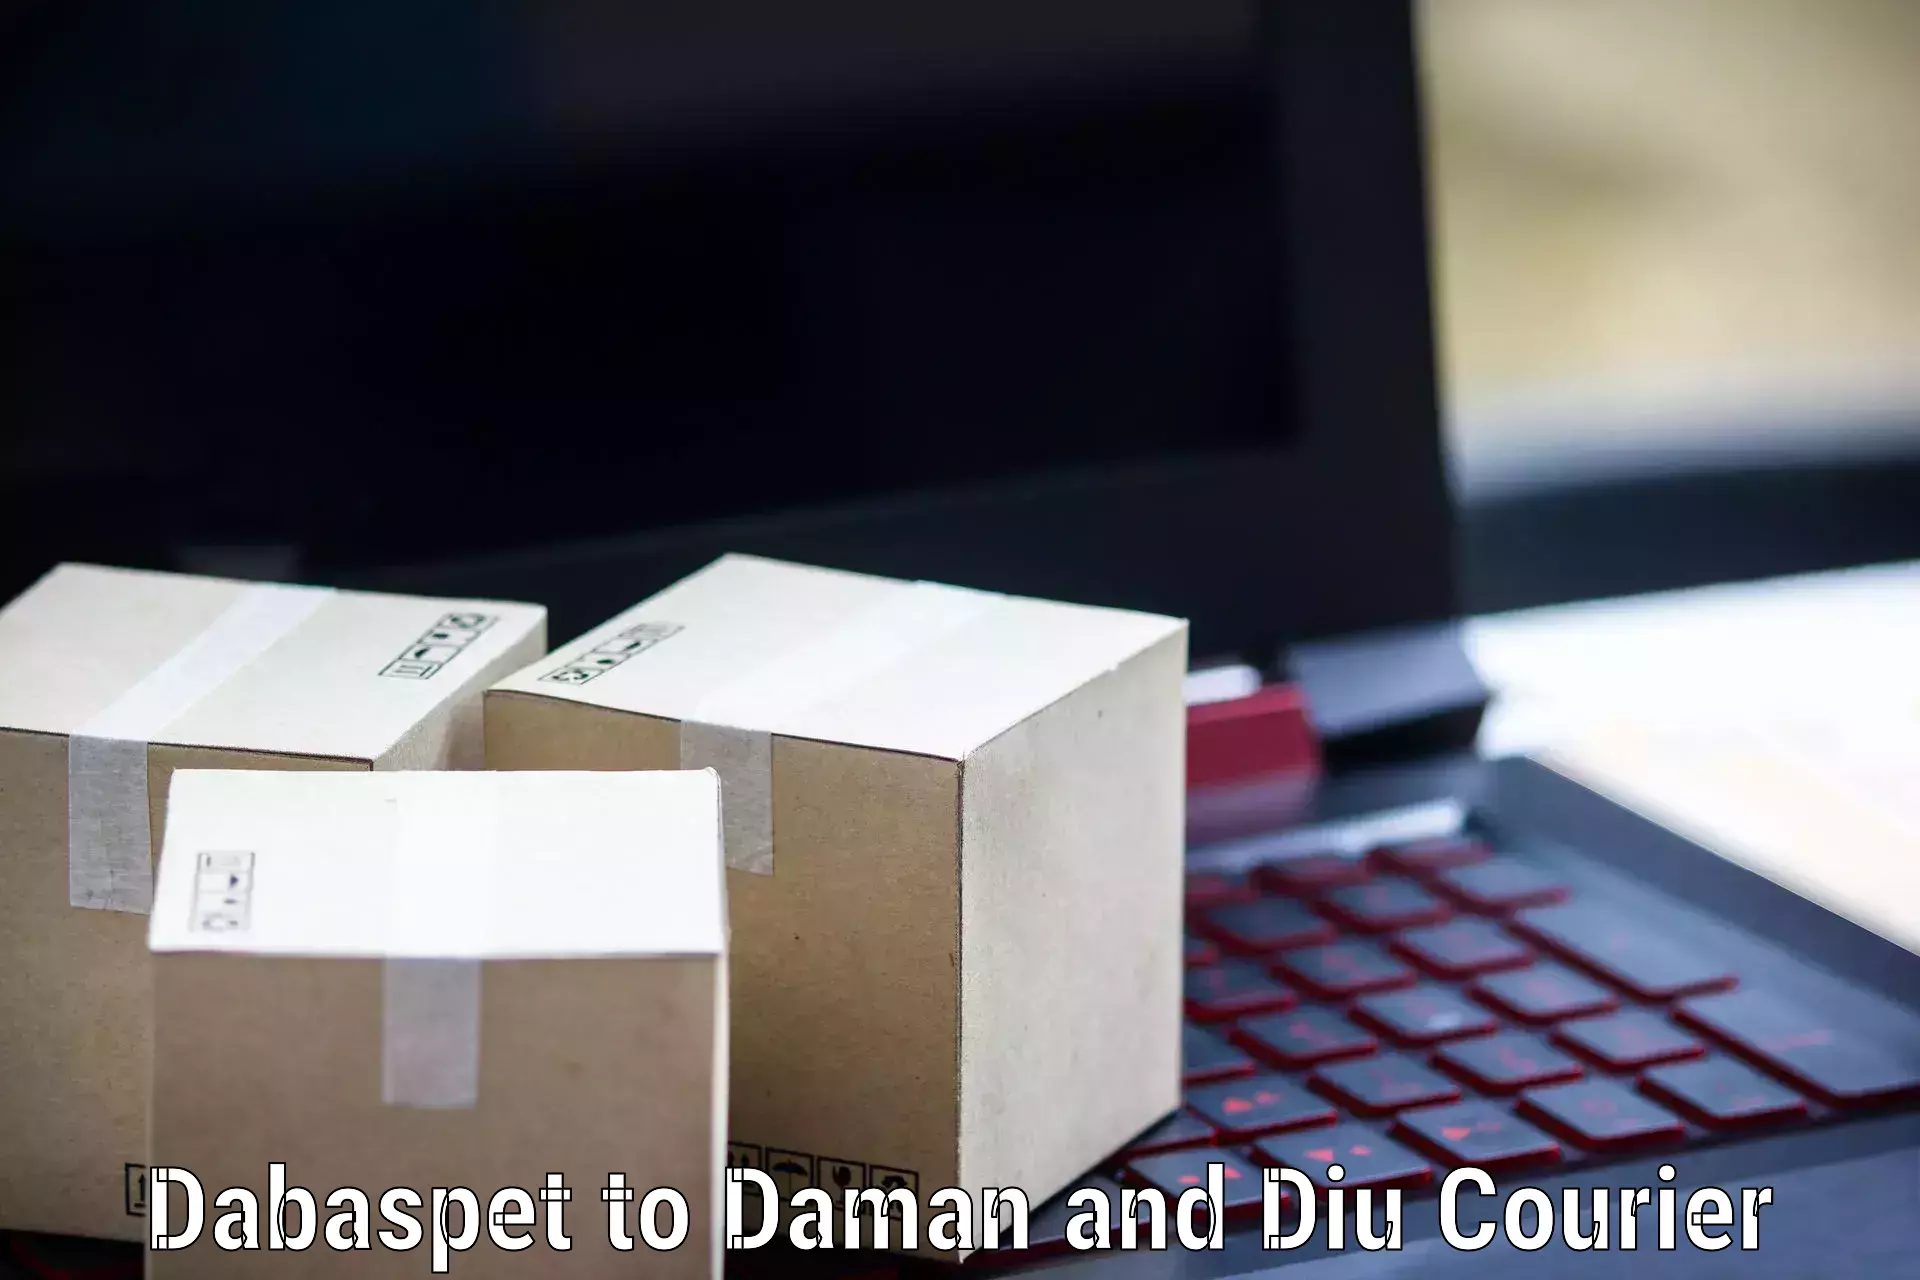 Express postal services Dabaspet to Daman and Diu